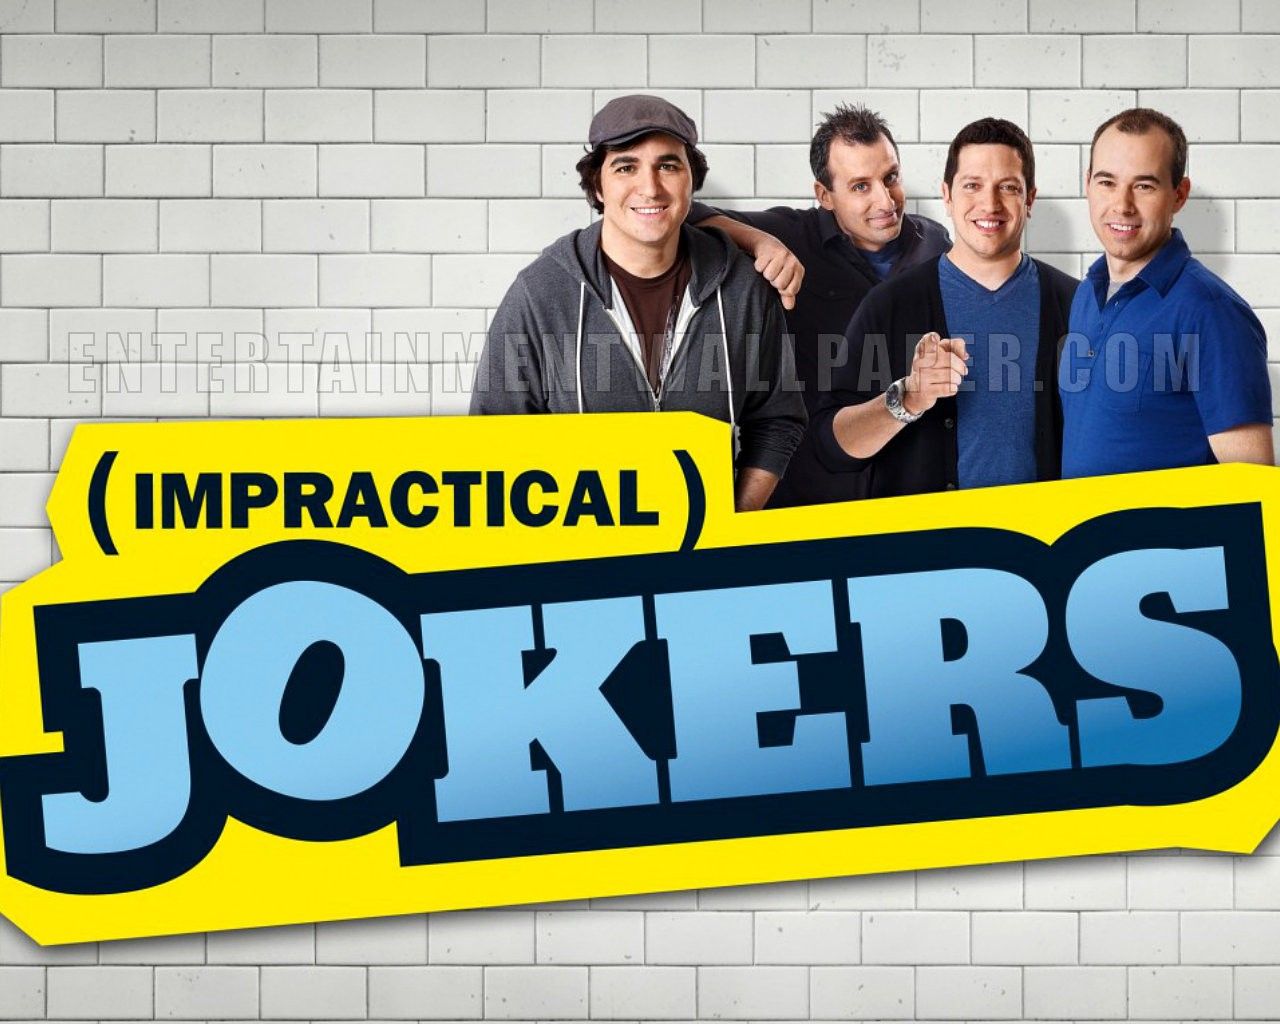 impractical jokers. Impractical jokers, Joker wallpaper, Joker